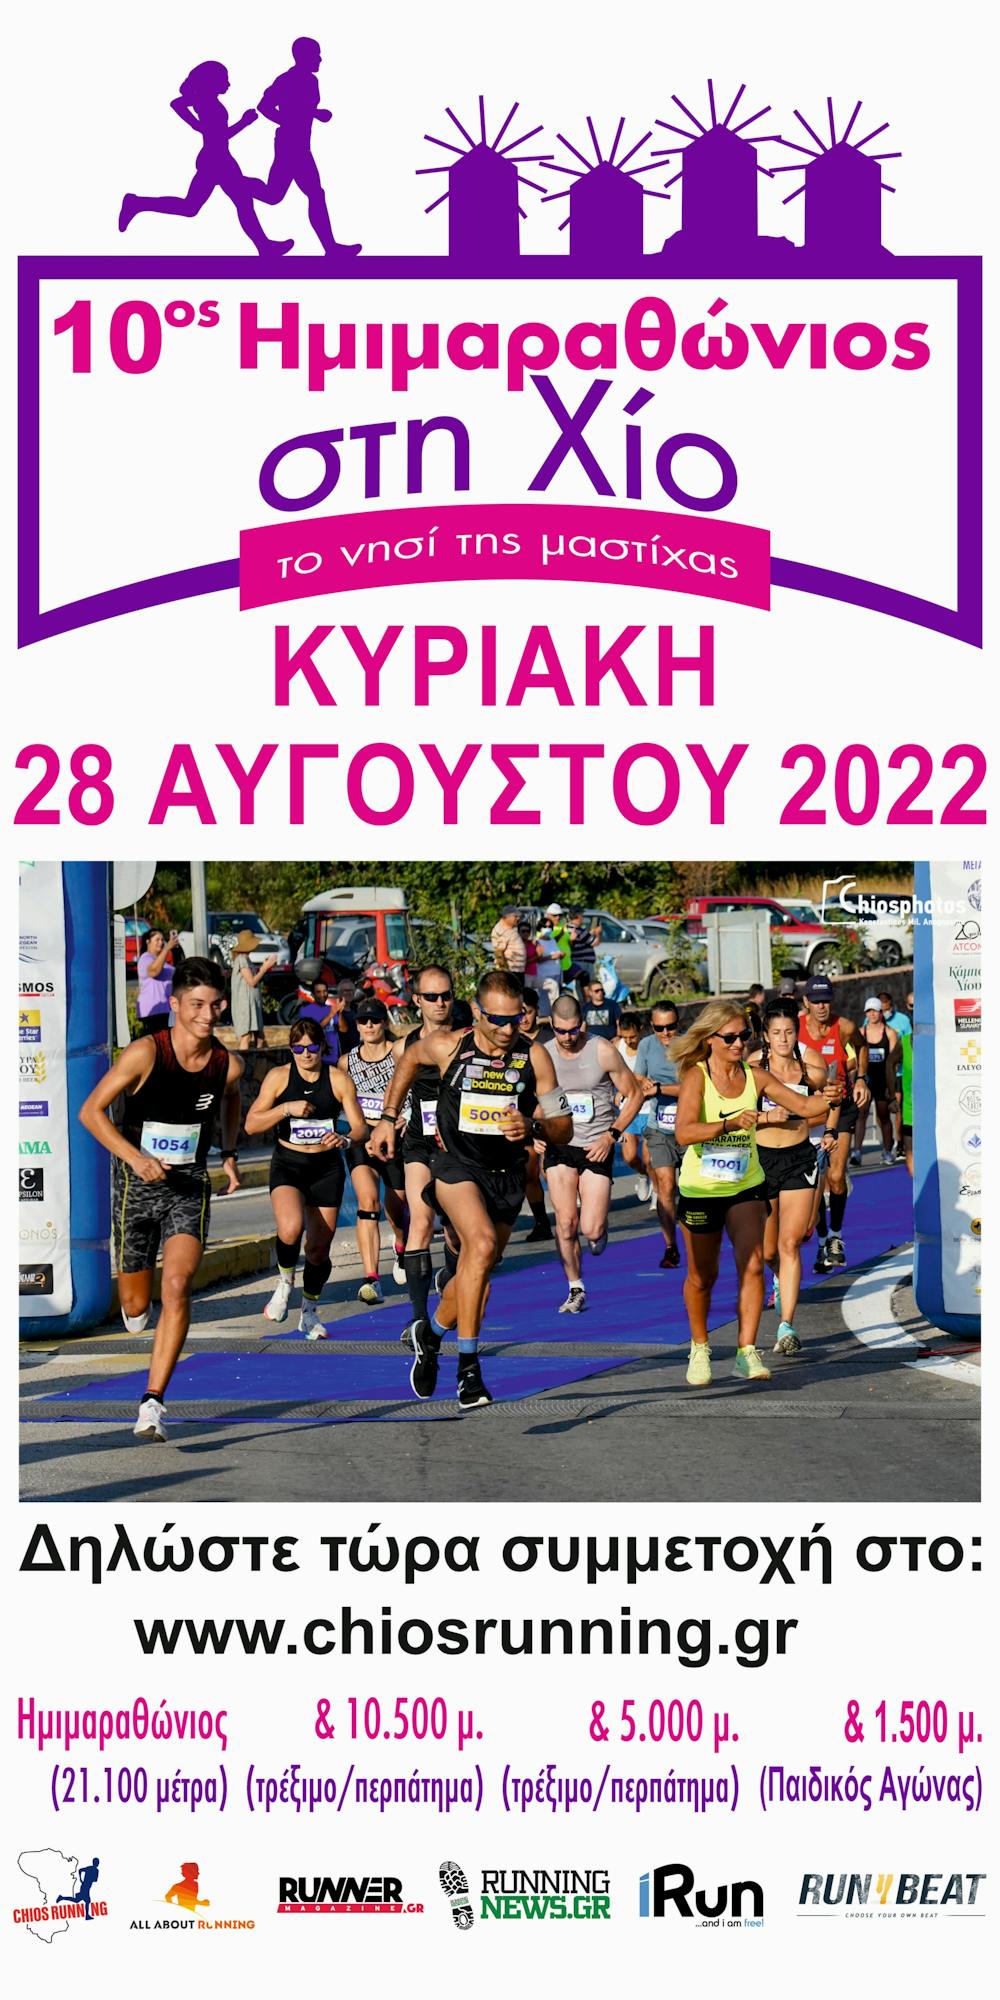 10ος Επετειακός Ημιμαραθώνιος Χίου: Οι προσφορές σε ξενοδοχεία και ακτοπλοϊκά για τη διοργάνωση! runbeat.gr 